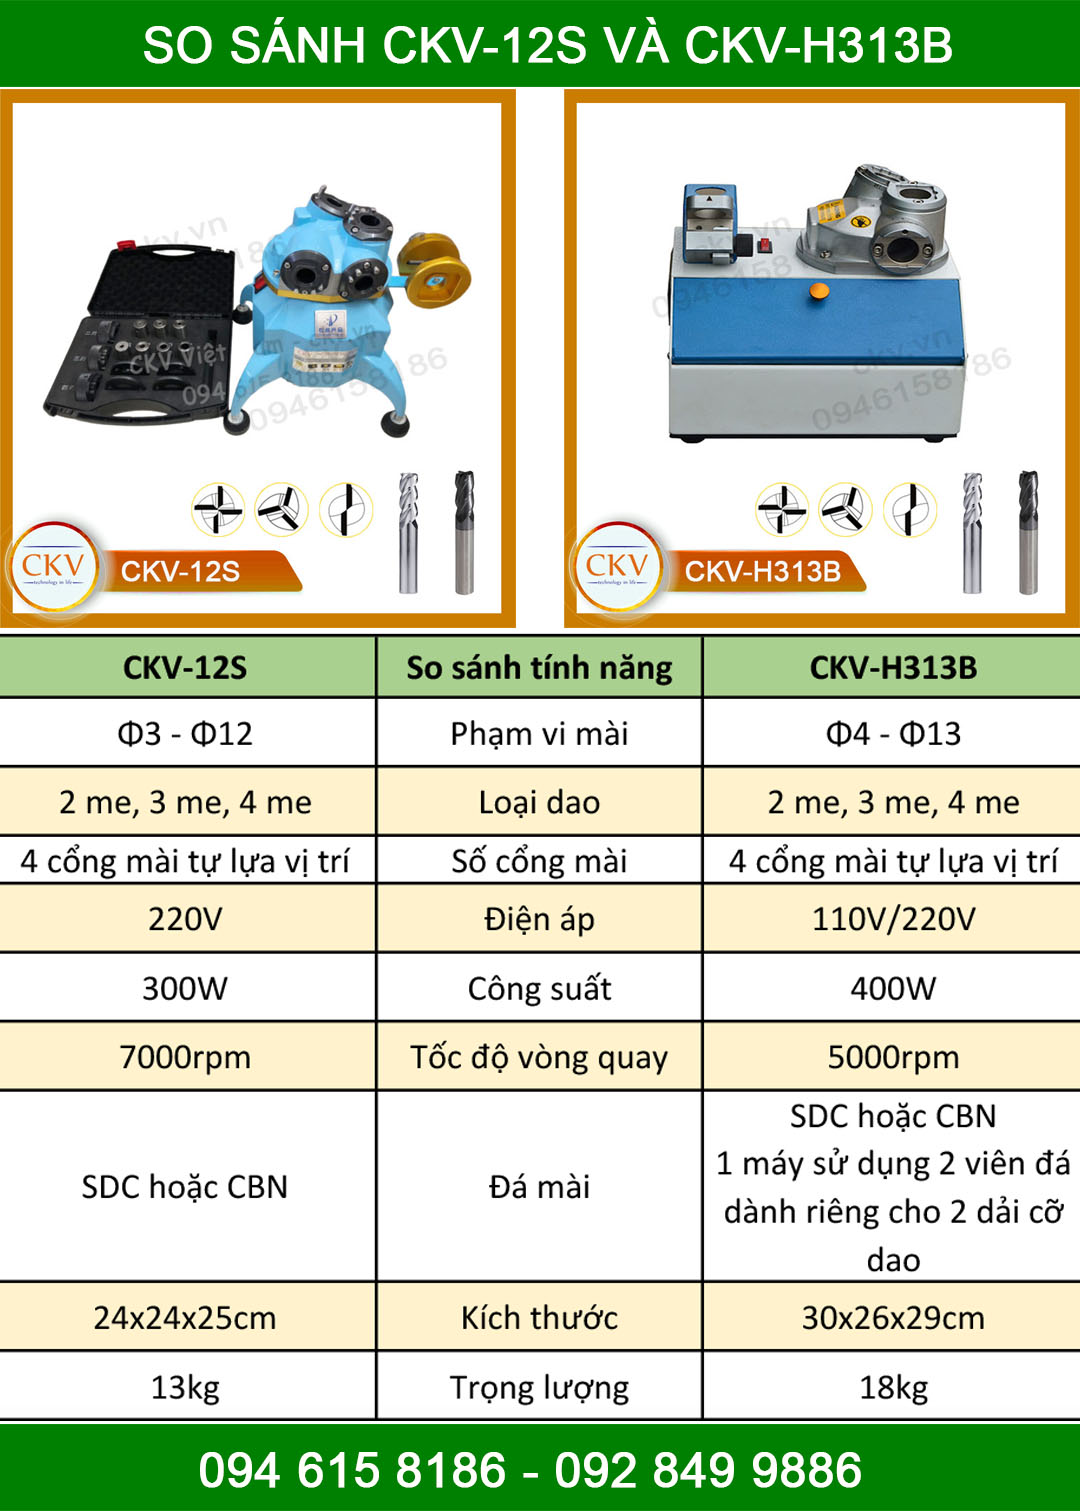 So sánh CKV-12S và CKV-H313B